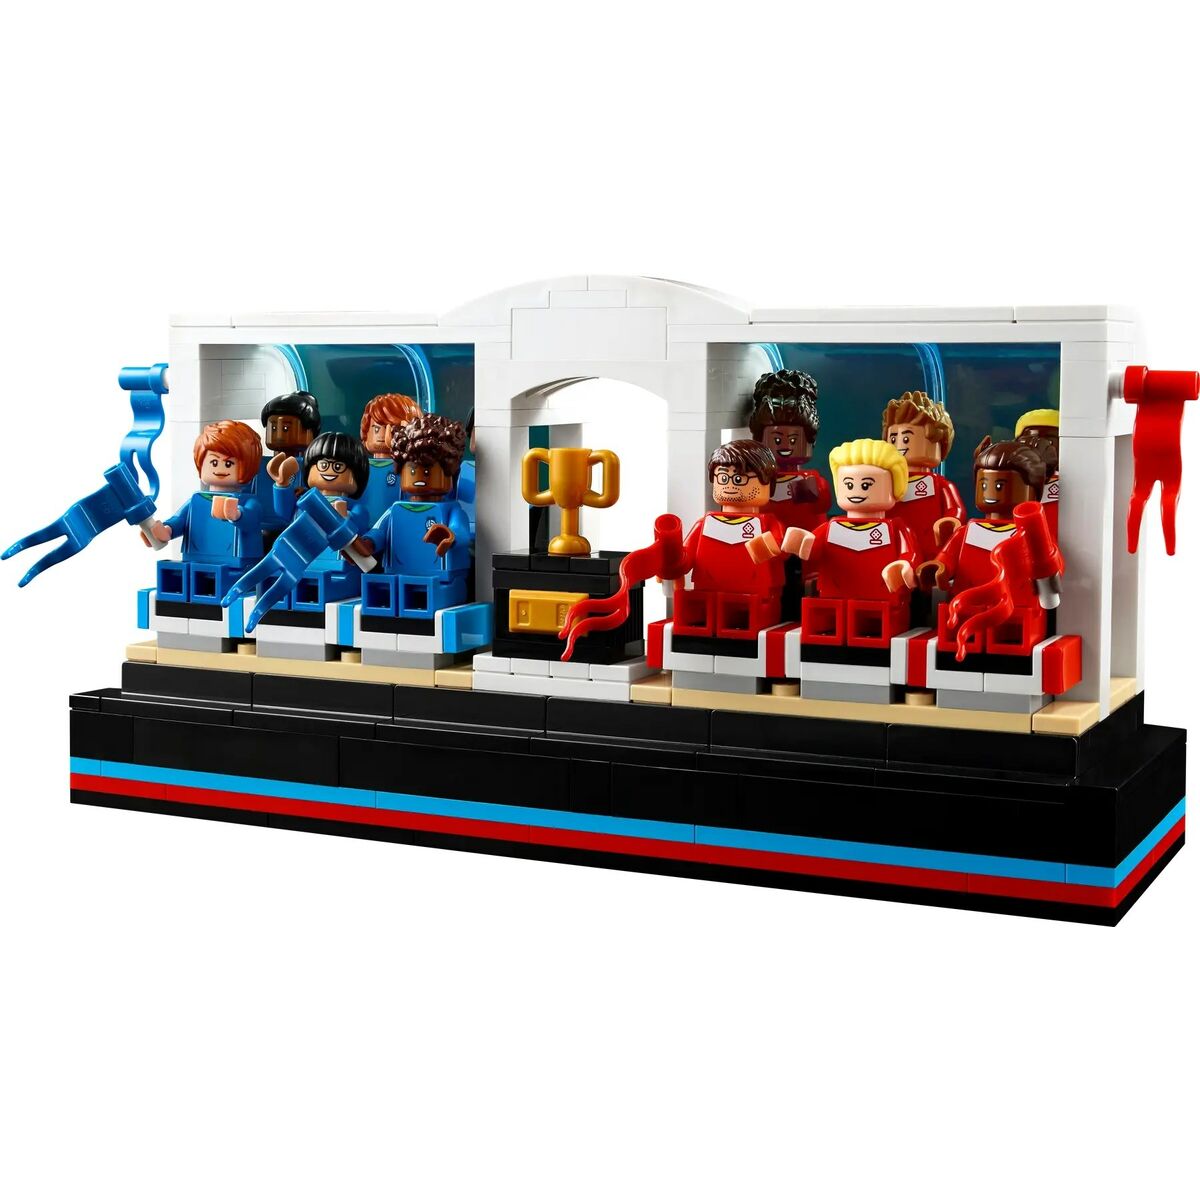 Строительный набор Lego 21337 2339 Предметы